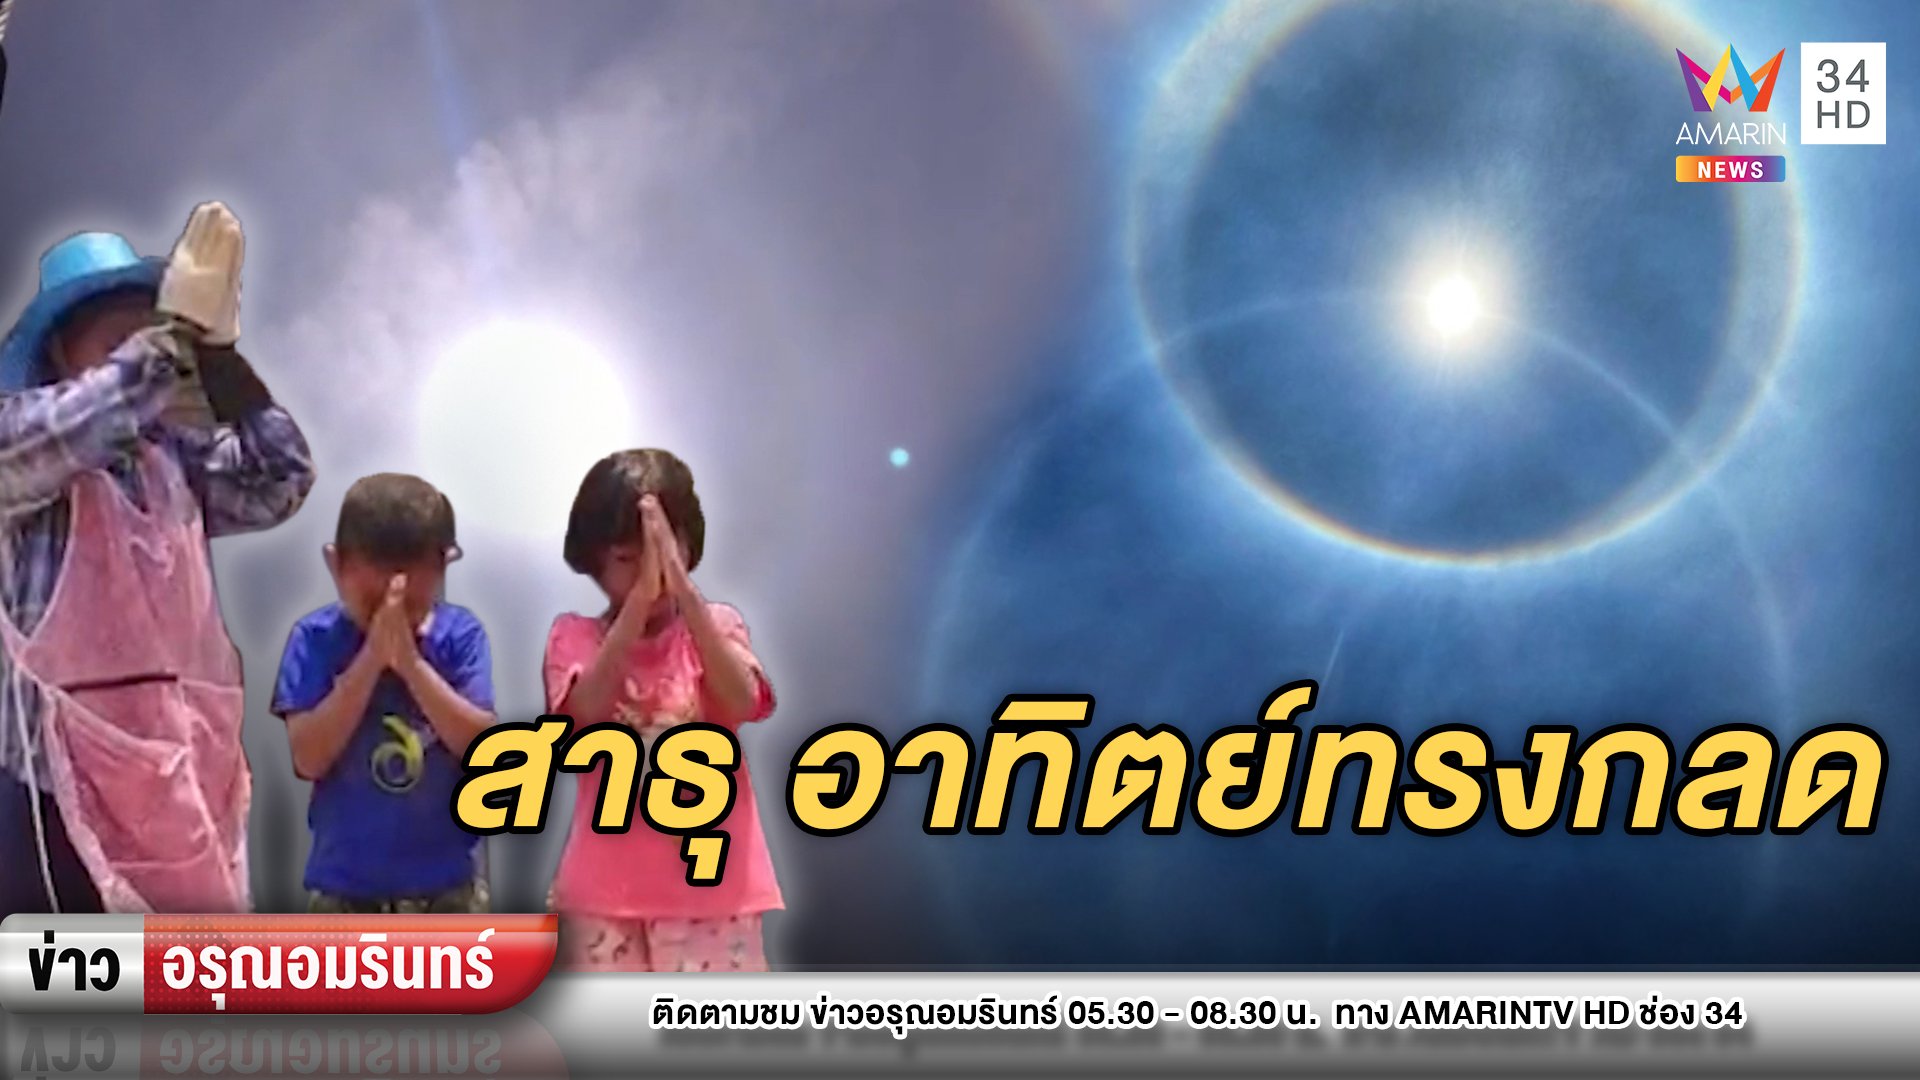 ความเชื่อ! ชาวบ้านแห่สาธุ พระอาทิตย์ทรงกลด 2 ชั้นประกายสดใส | ข่าวอรุณอมรินทร์ | 21 เม.ย. 64 | AMARIN TVHD34